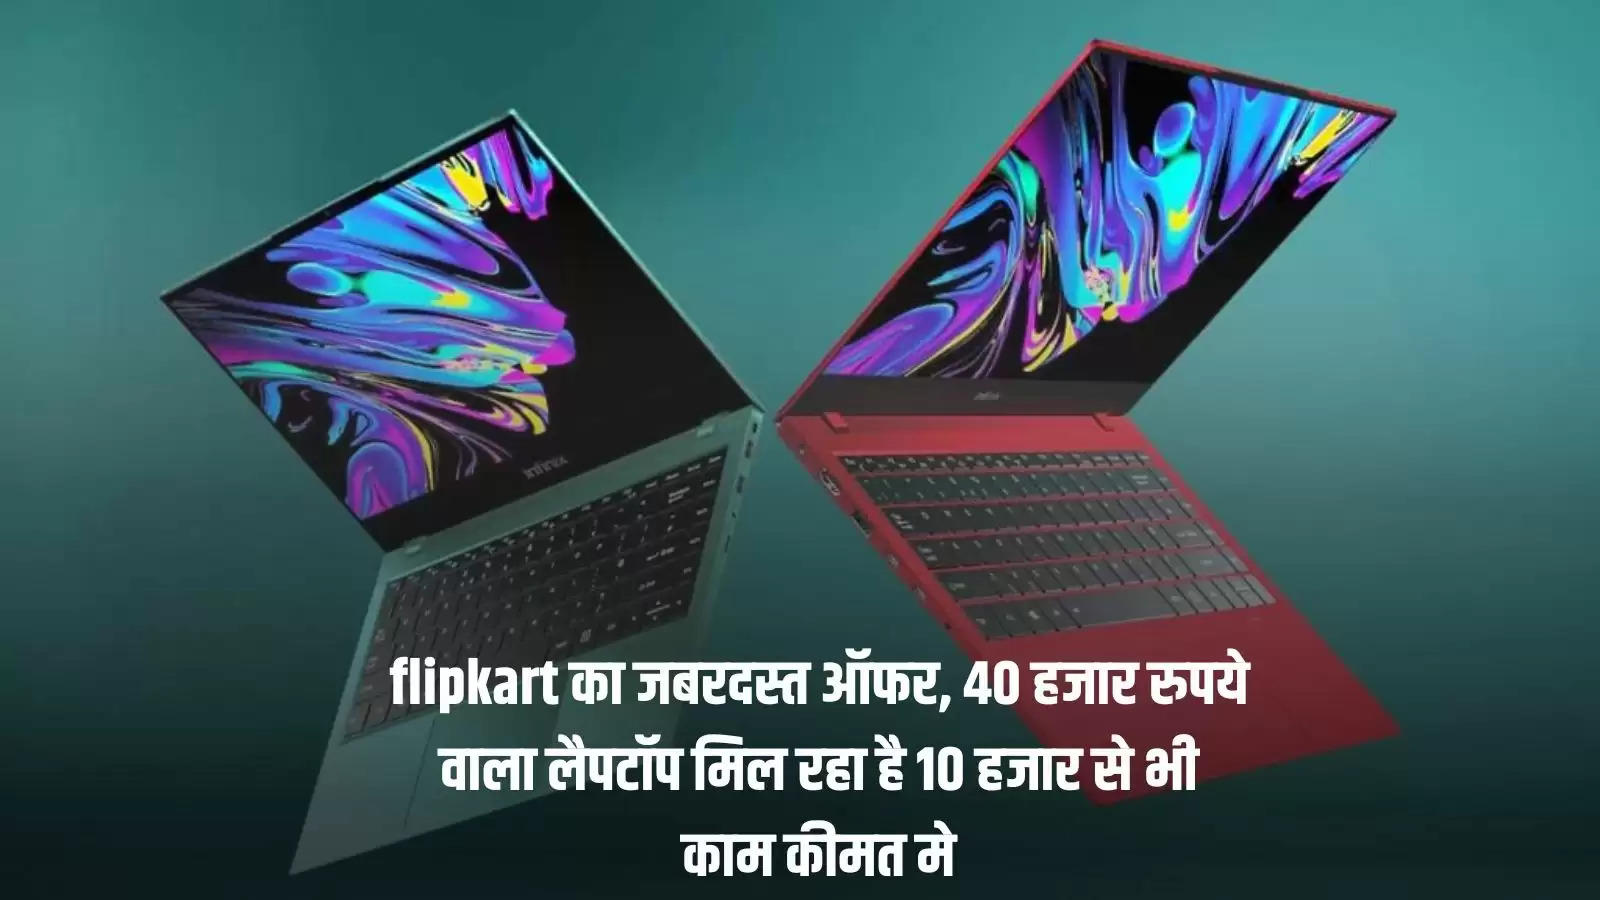 flipkart का जबरदस्त ऑफर, 40 हजार रुपये वाला लैपटॉप मिल रहा है 10 हजार से भी काम कीमत मे